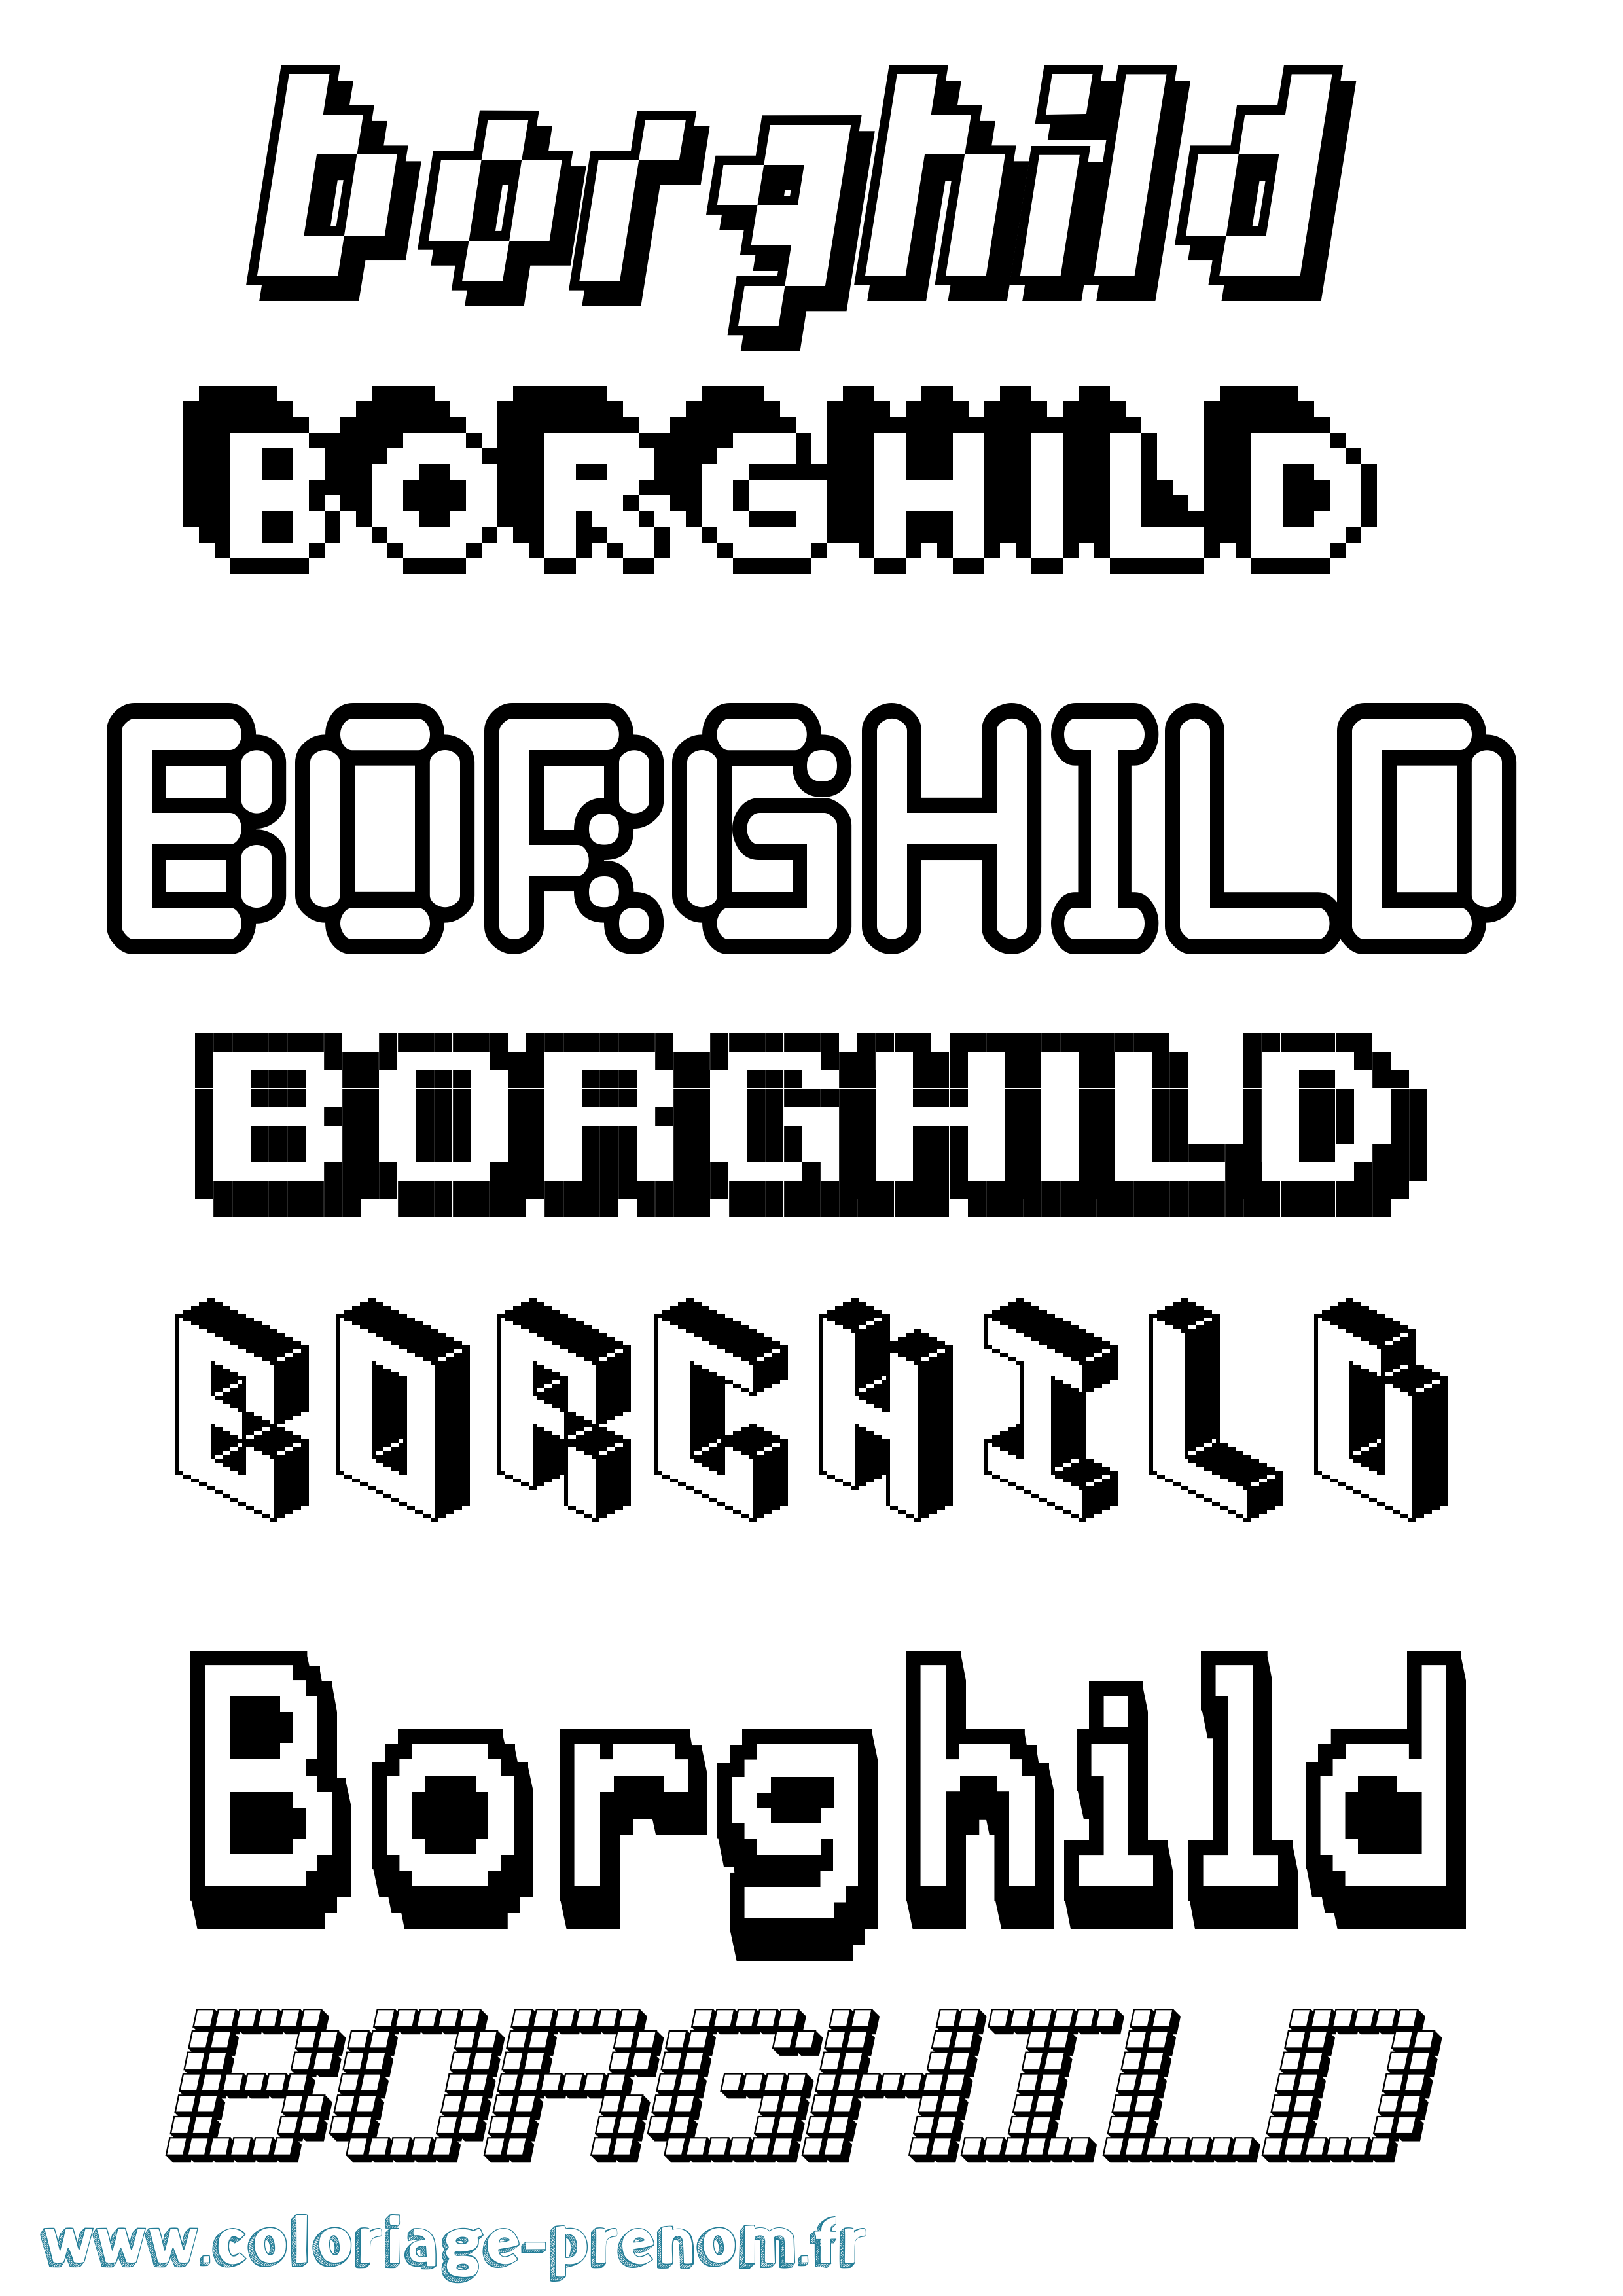 Coloriage prénom Borghild Pixel